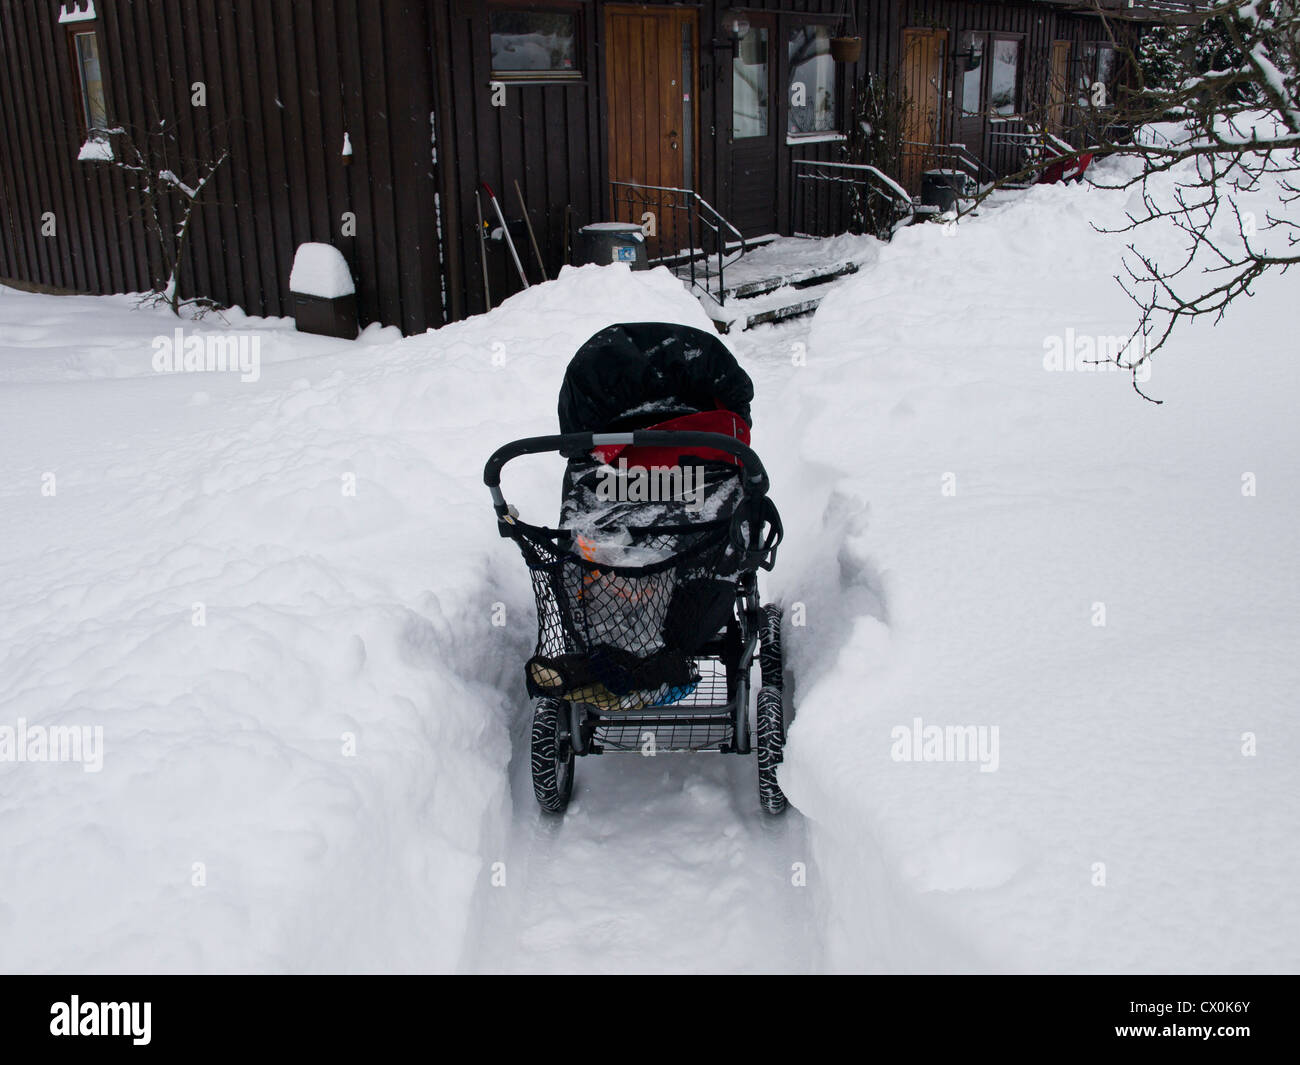 Kinderwagen im hohen Schnee, das Manövrieren schwierig, Winter in Oslo  Norwegen macht Stockfotografie - Alamy